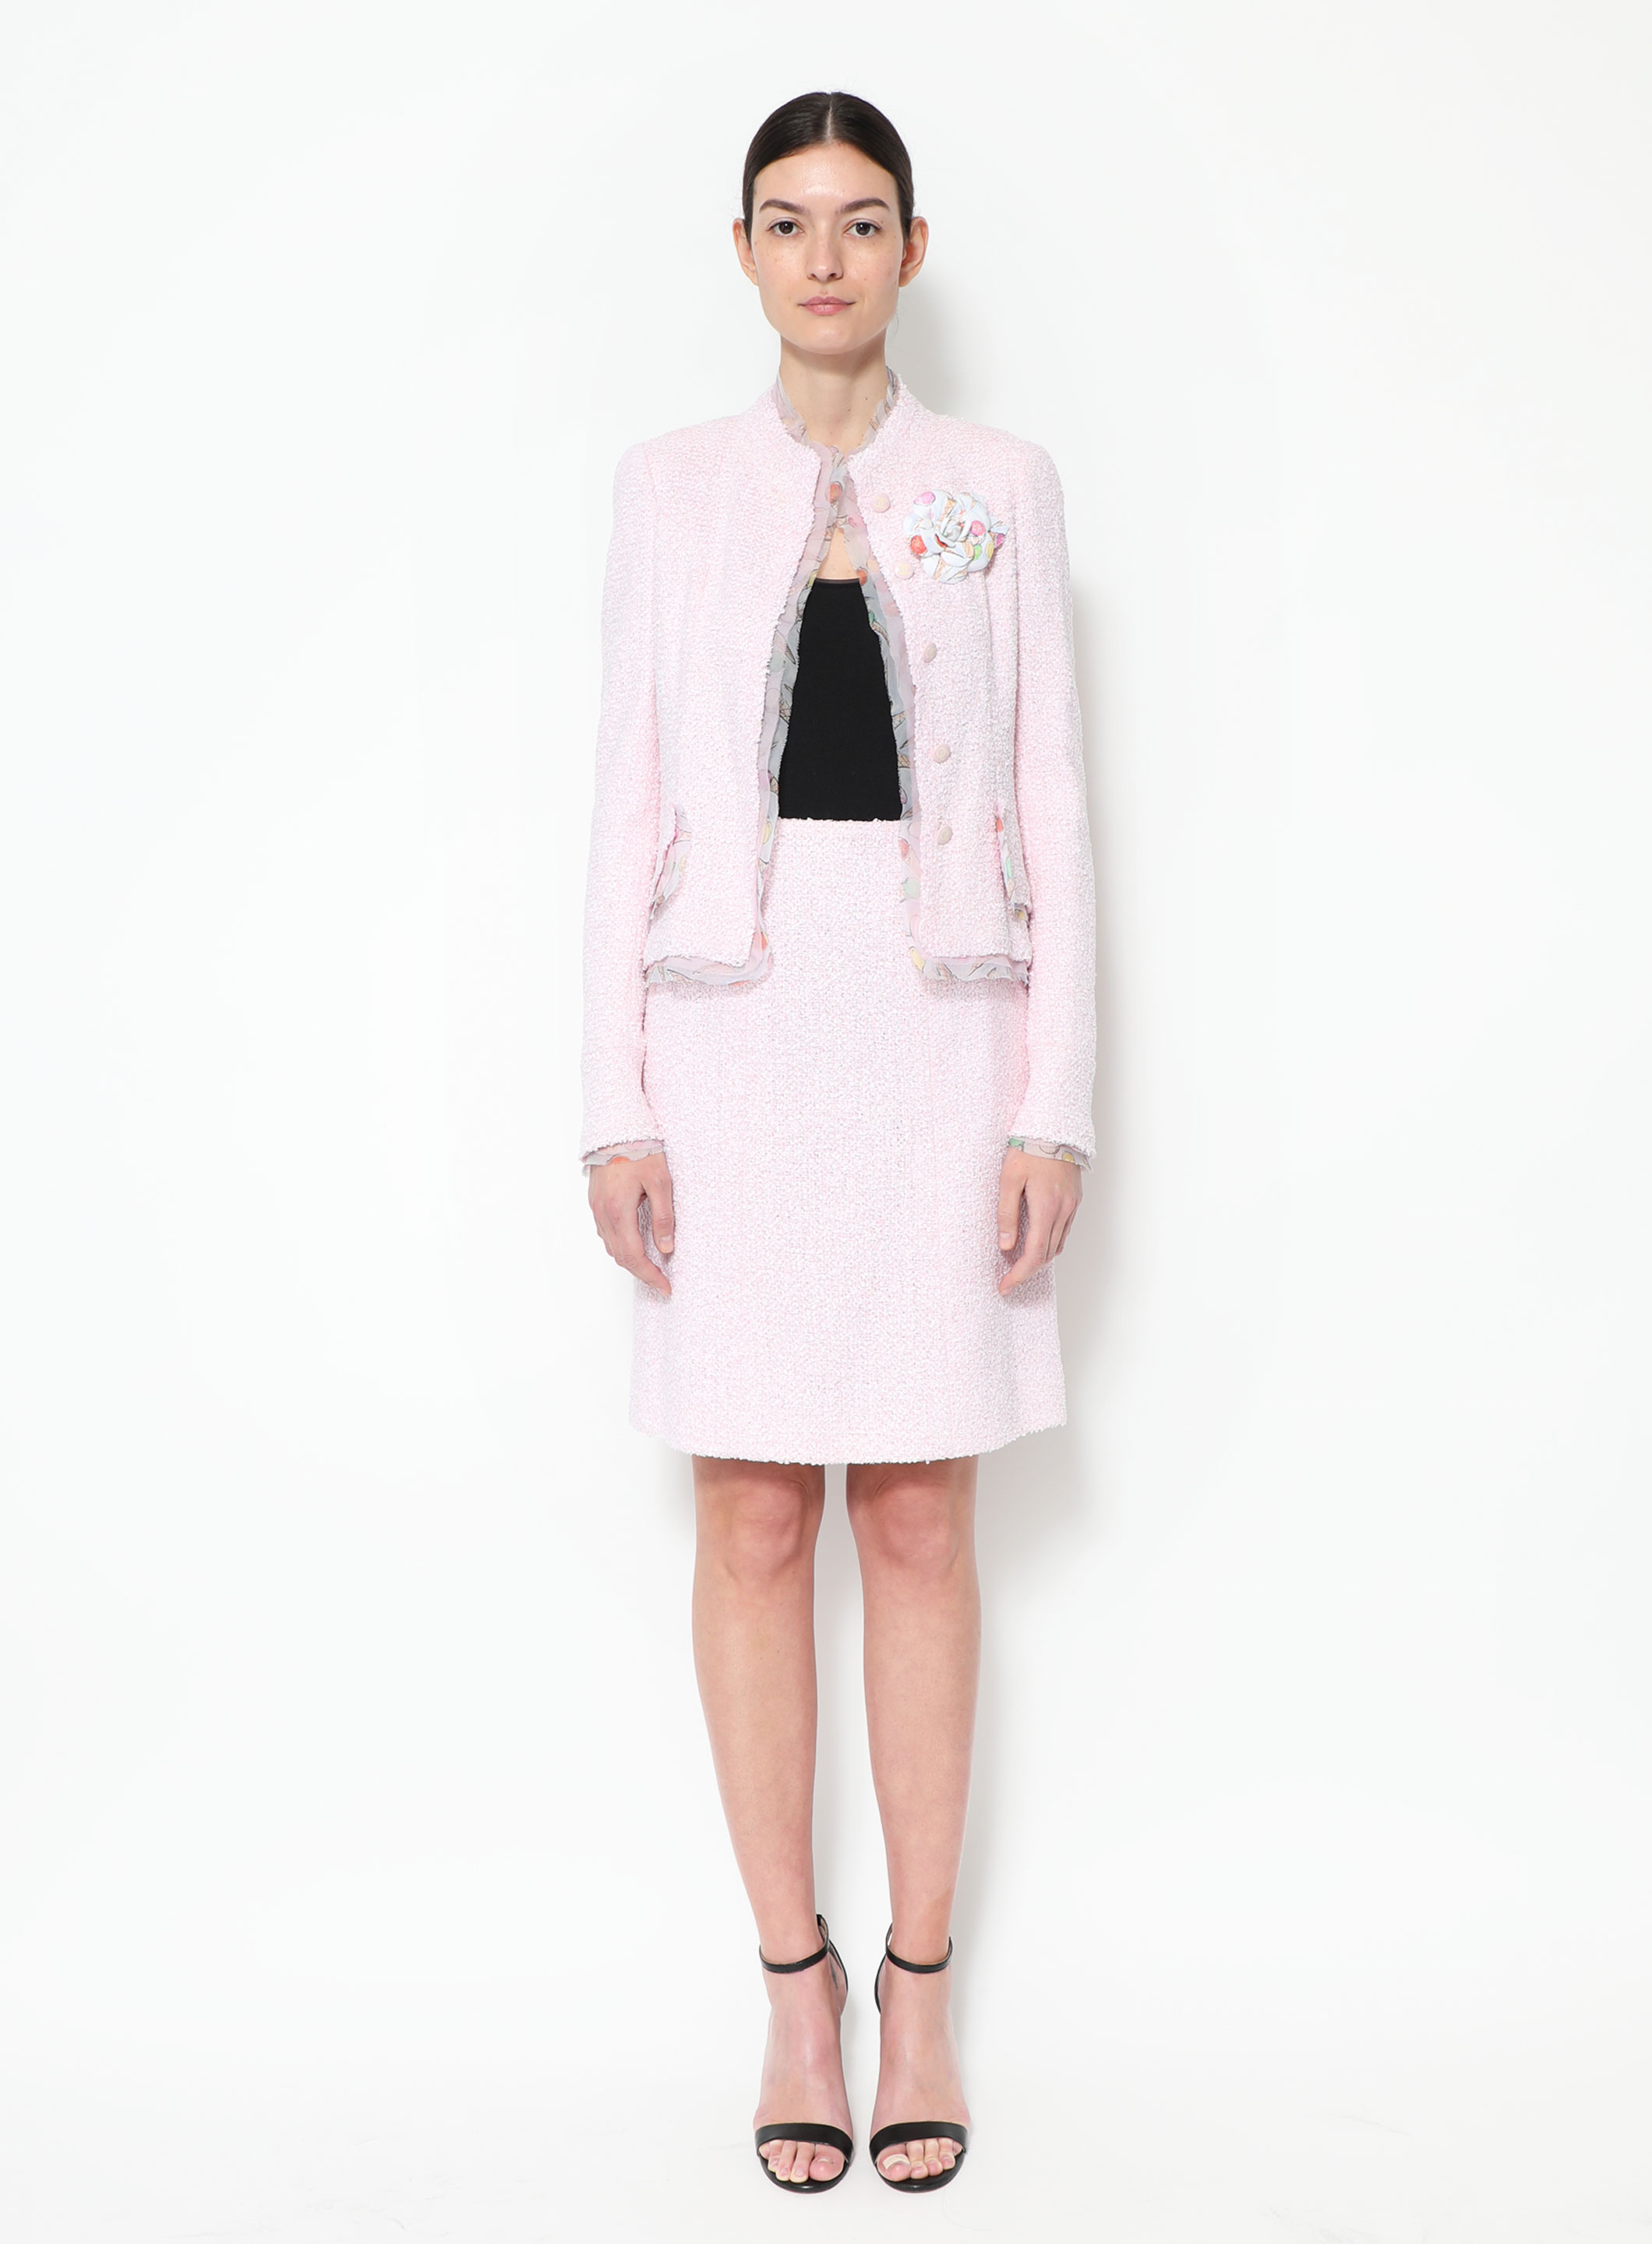 Chanel pink suit skirt - Gem